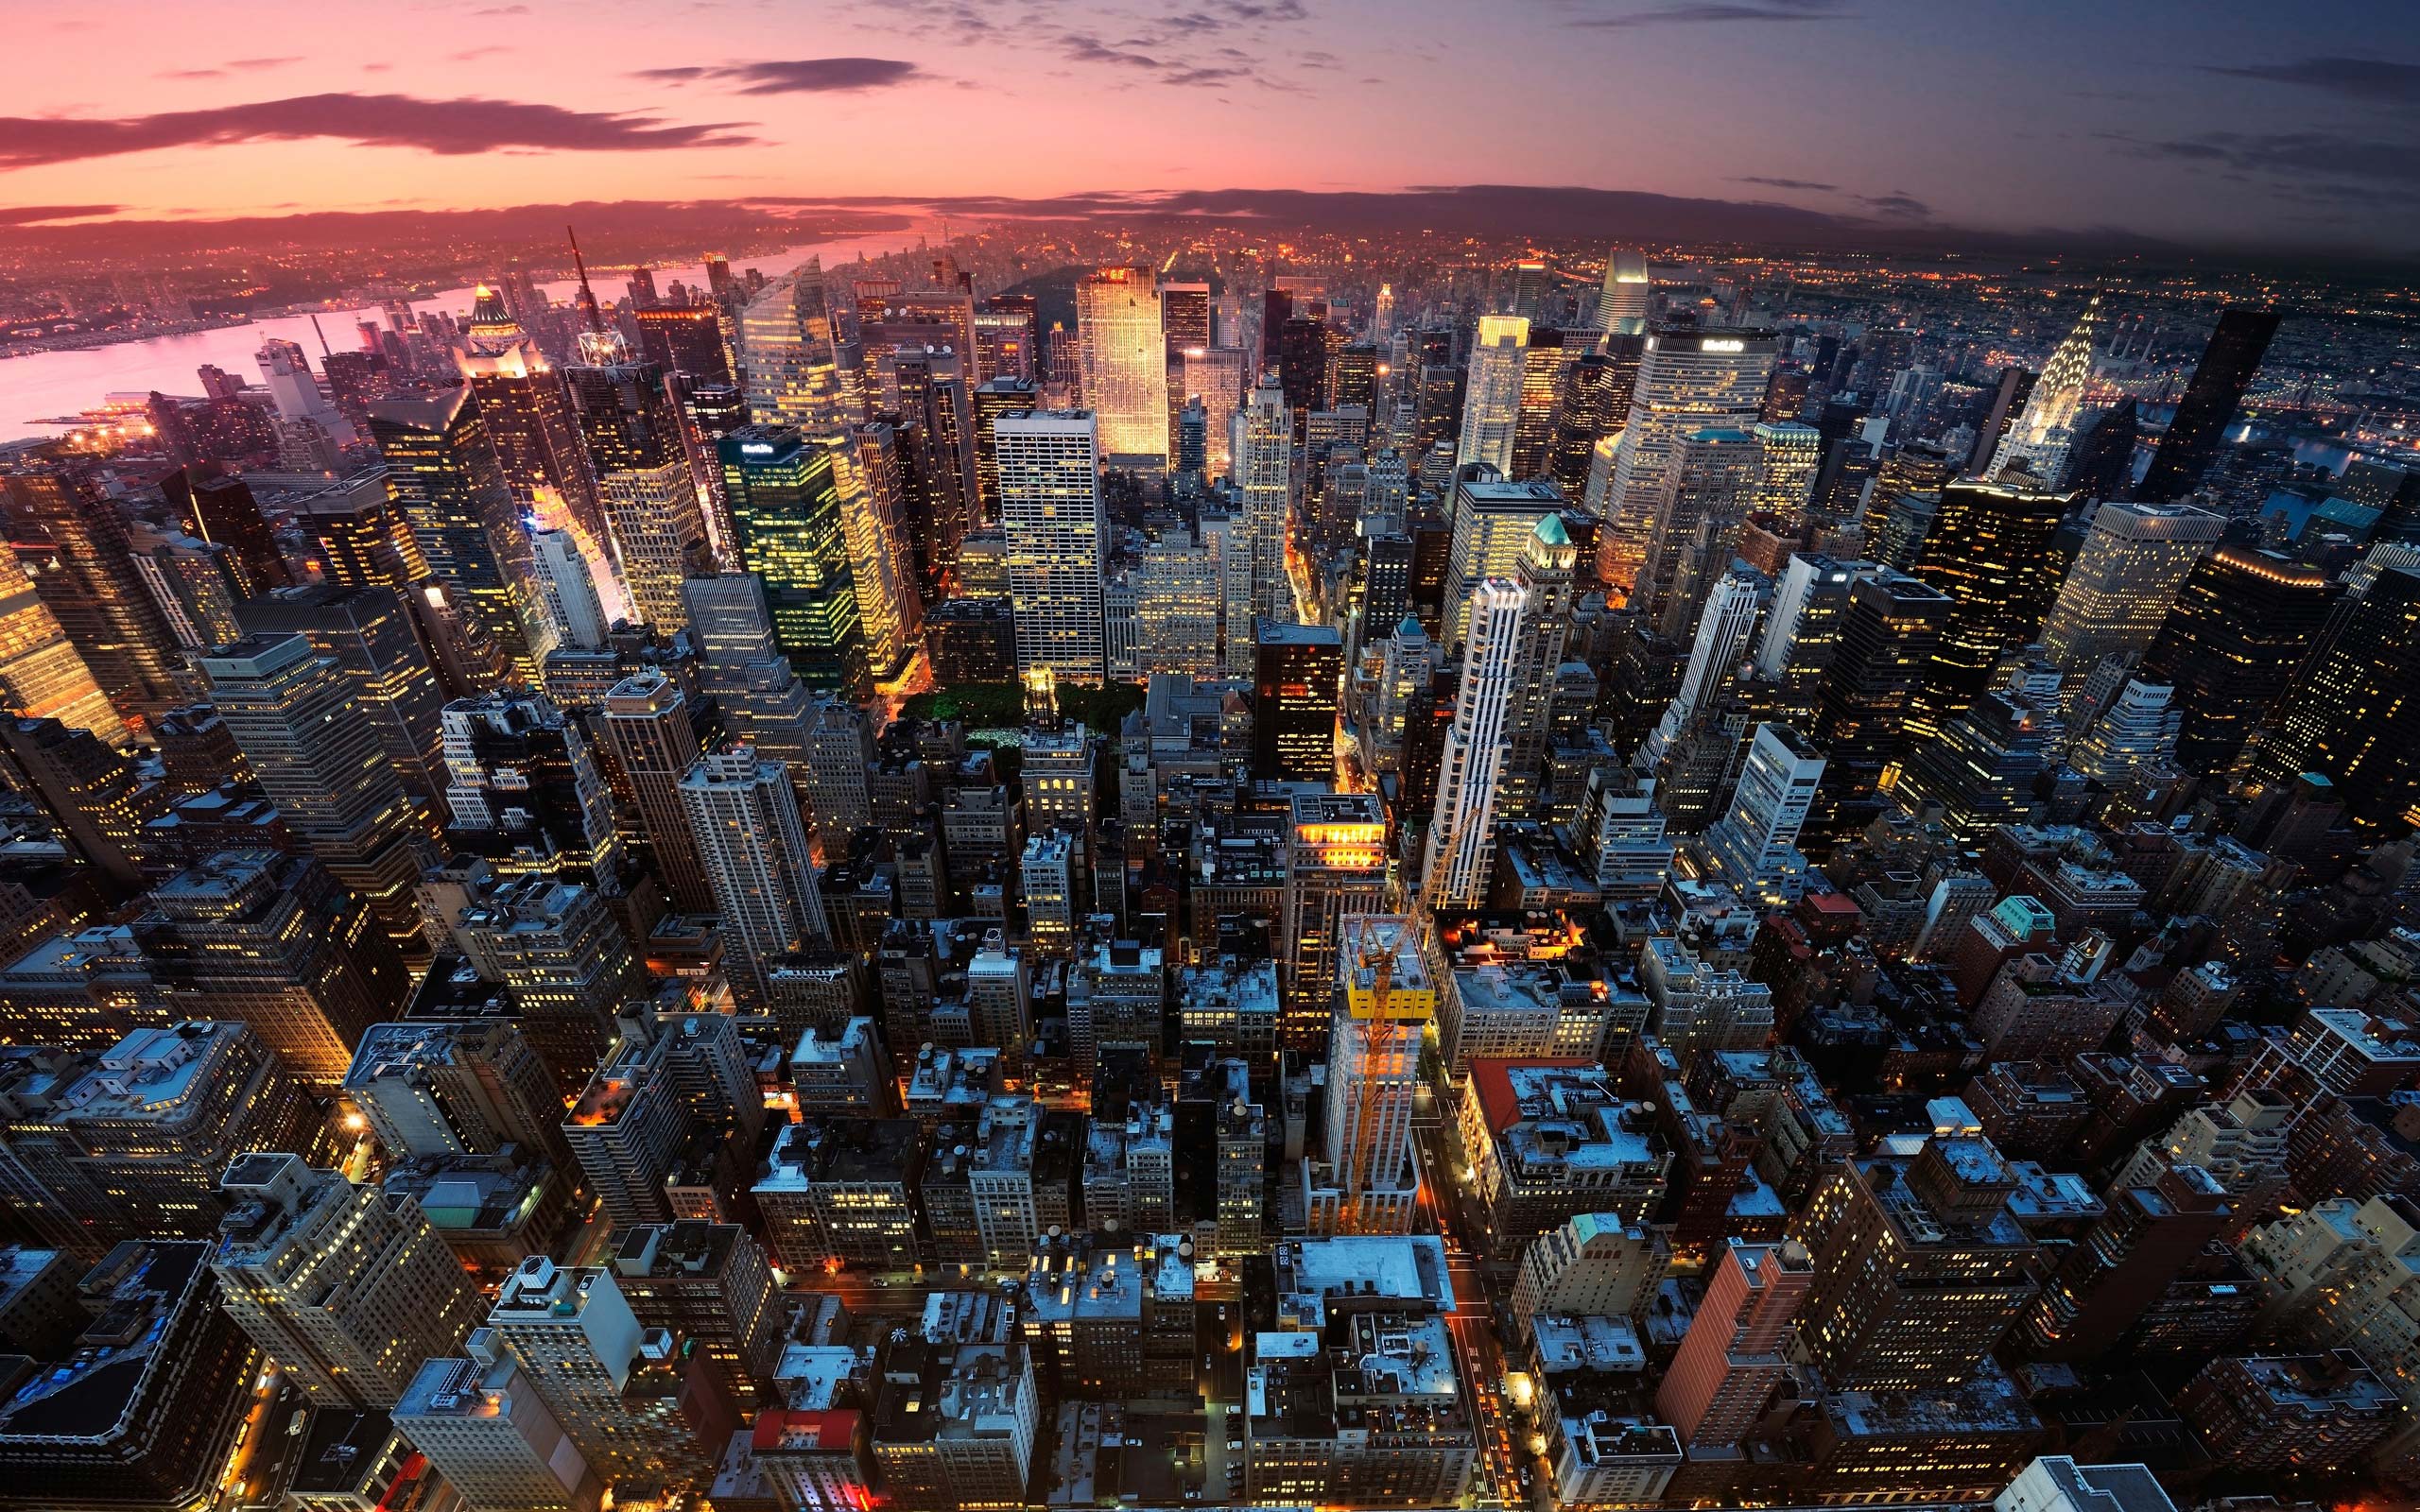 Hãy đắm mình trong không gian tuyệt đẹp của New York với hình nền 4K chất lượng cao. Từng chi tiết và ánh sáng được tái hiện một cách rõ ràng và sống động, giúp bạn nhìn thấy thành phố này từ một góc nhìn hoàn toàn mới lạ.